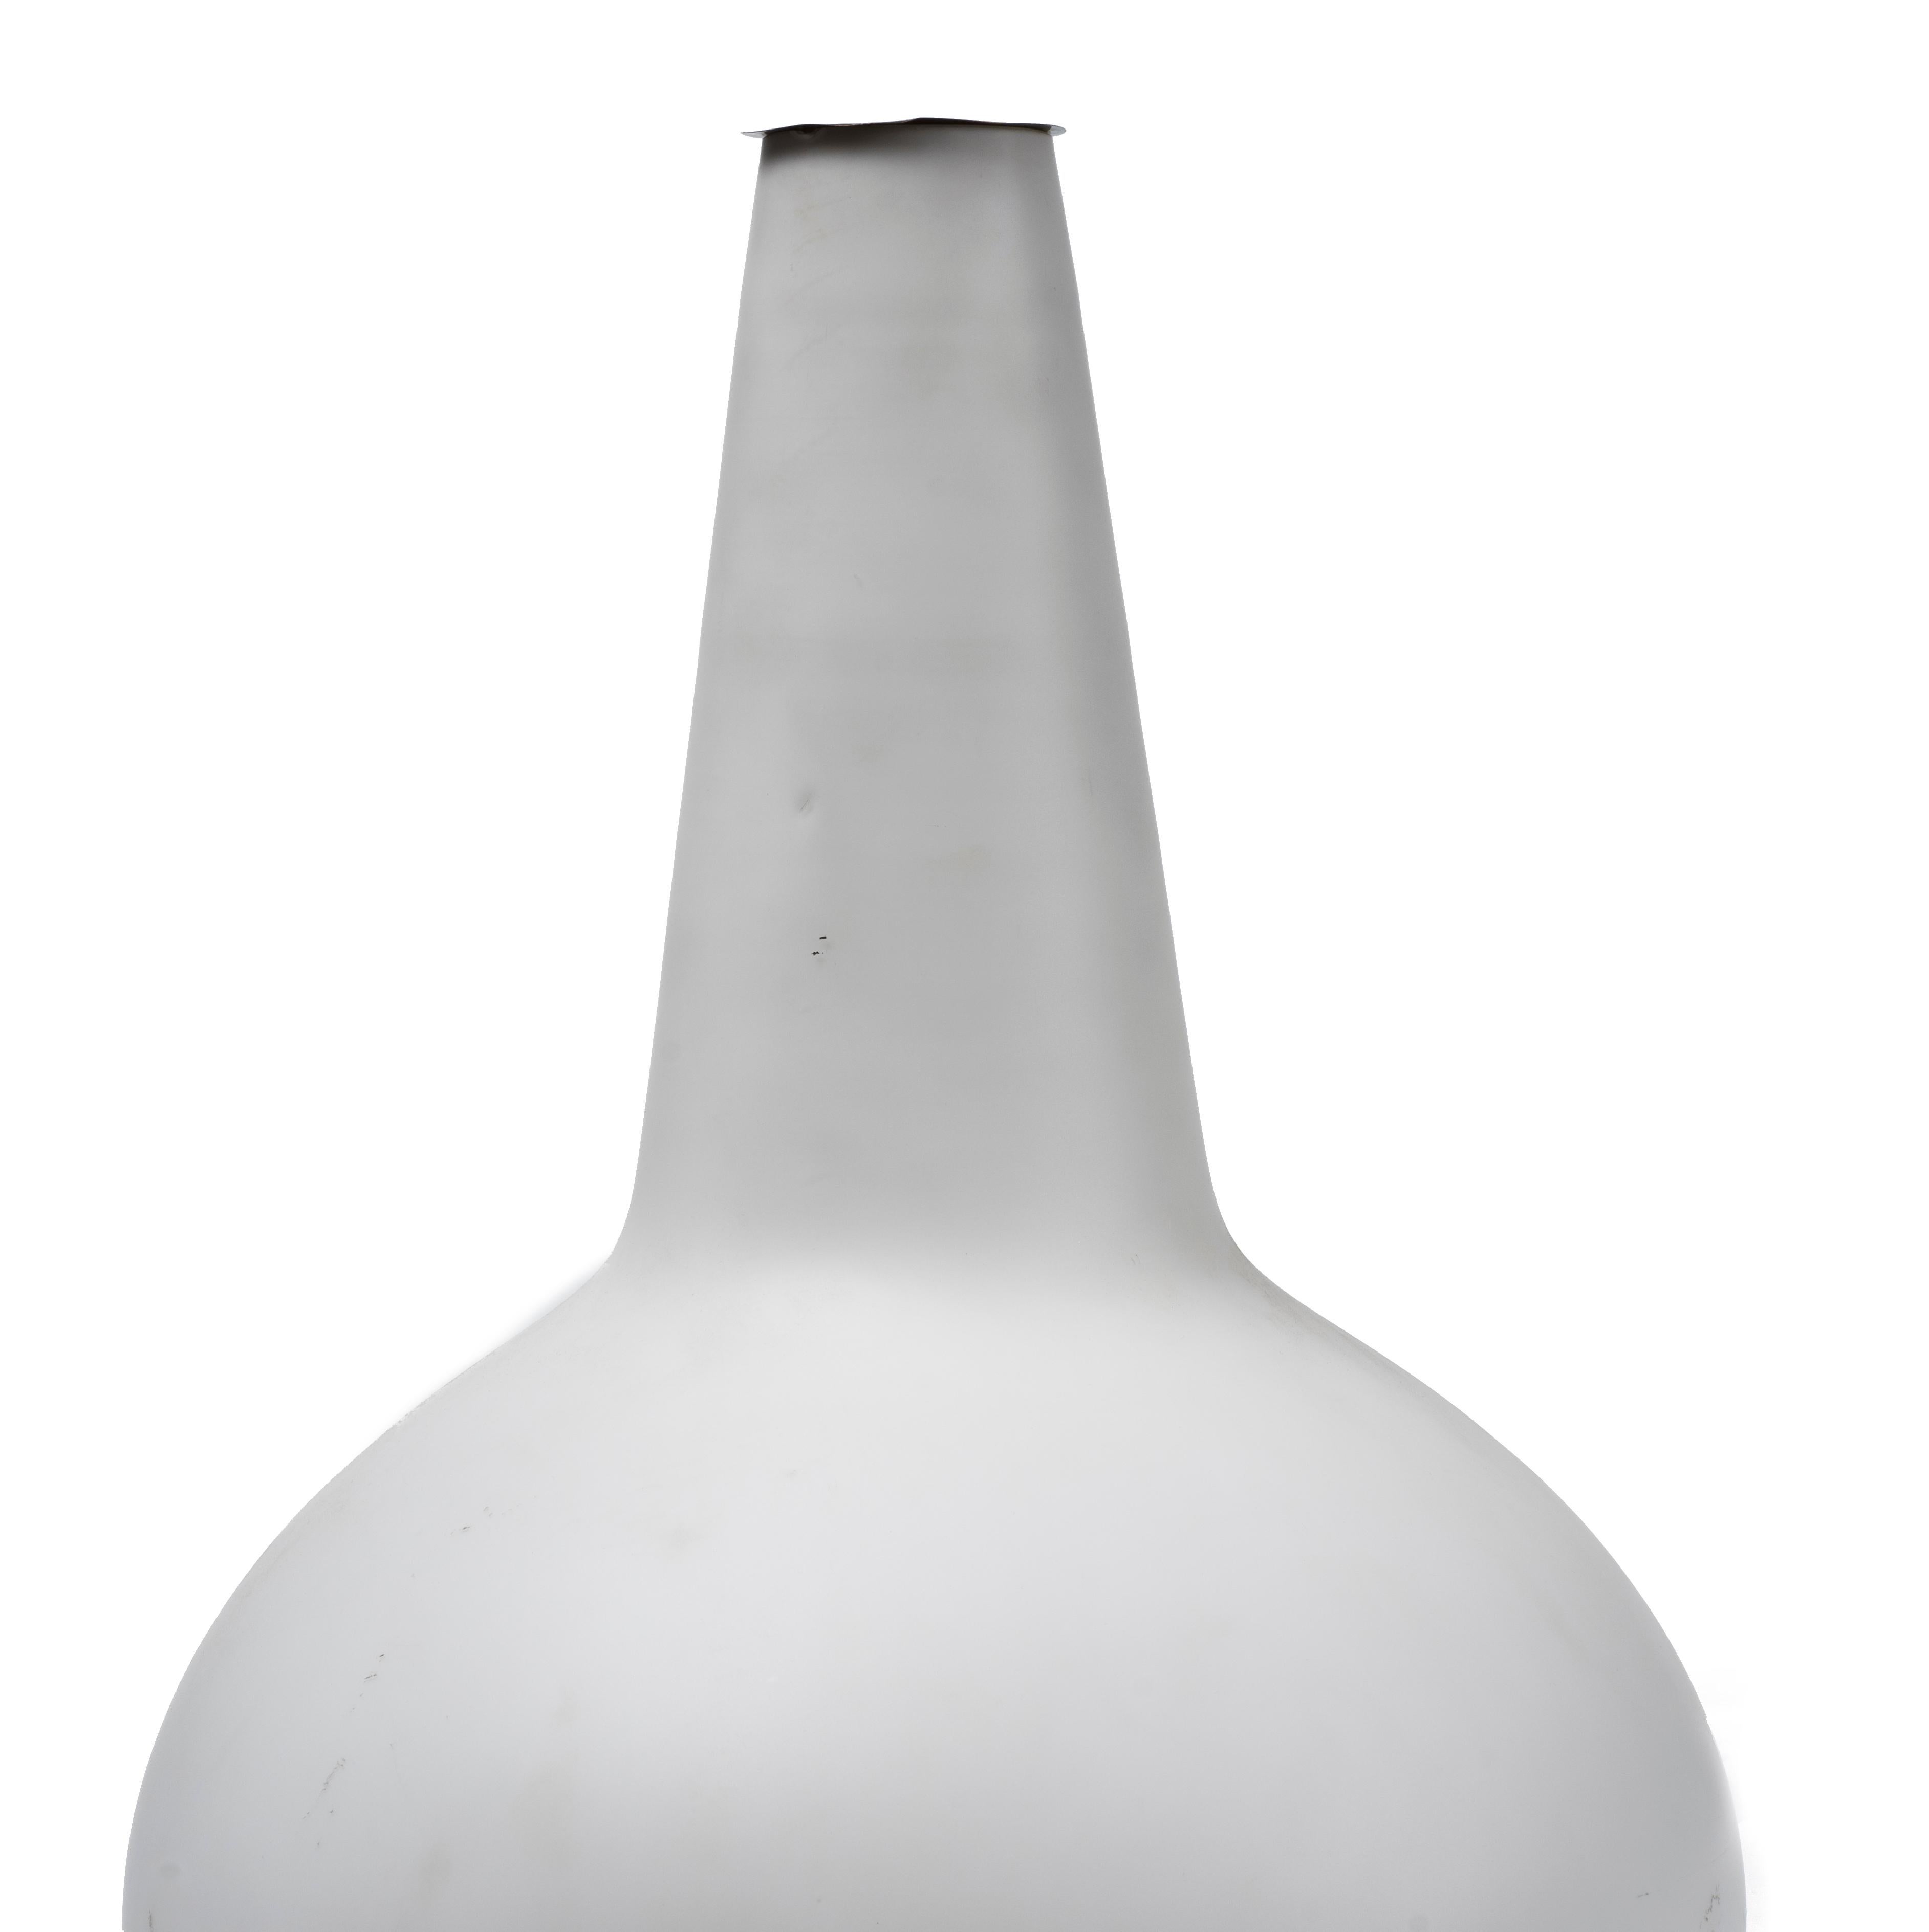 Lampe-vase en métal laqué et laiton, diffuseur en verre blanc satiné réalisée par Fontana Arte, société italienne fondée à Milan en 1932 par Luigi Fontana et Giò Ponti.

Spécialisée dans la transformation du verre et la création d'accessoires